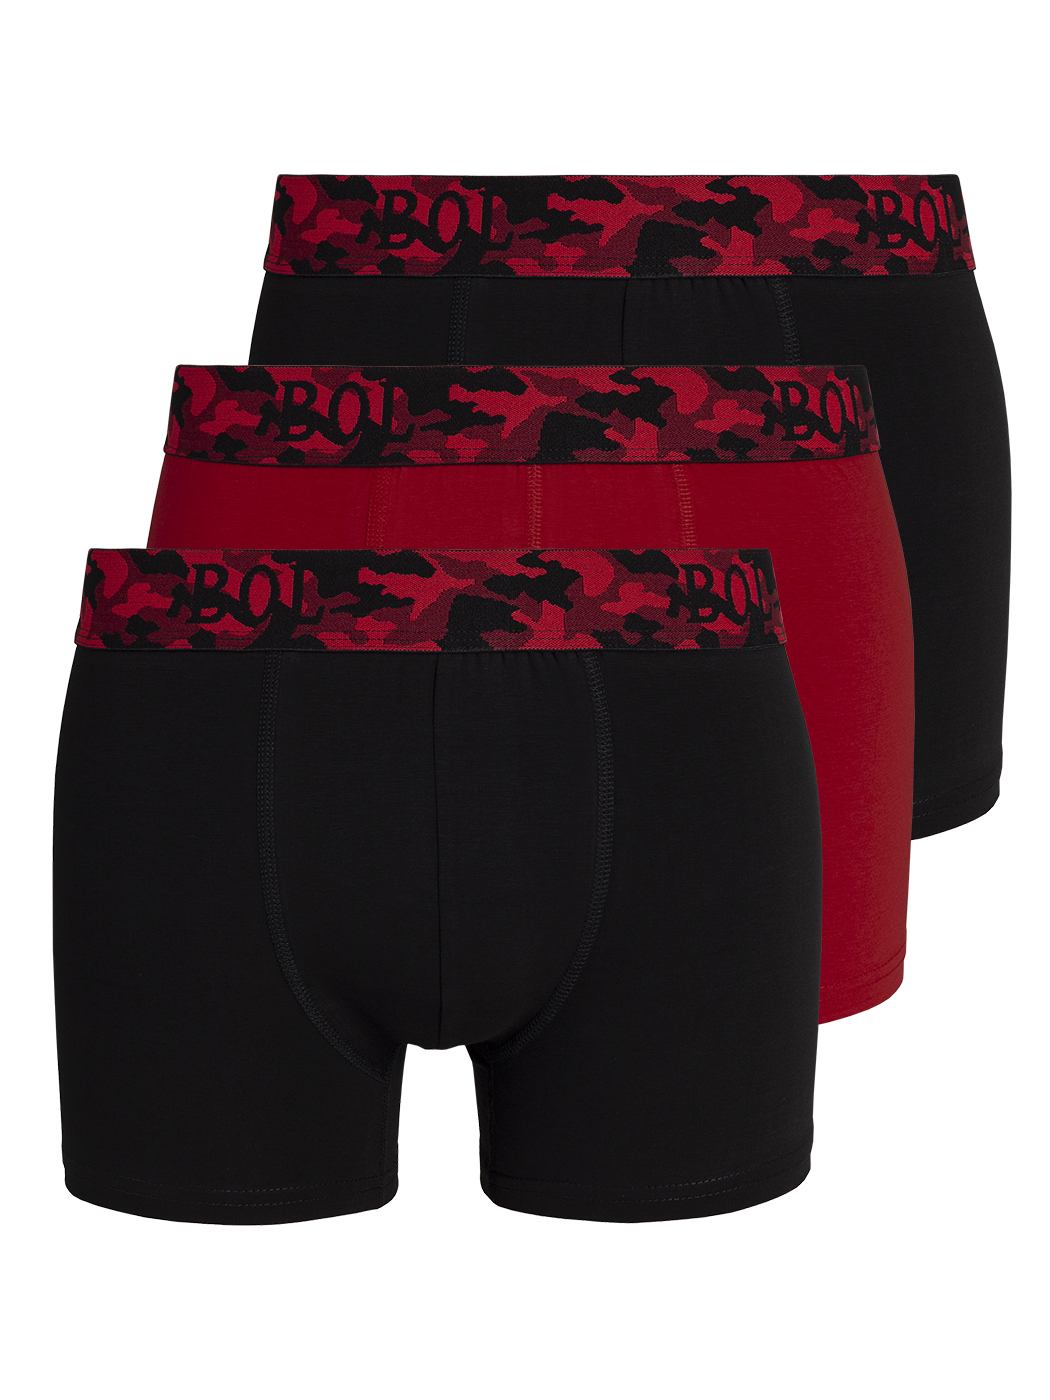 Комплект трусов мужских BOL Men's 178 черных; красных L